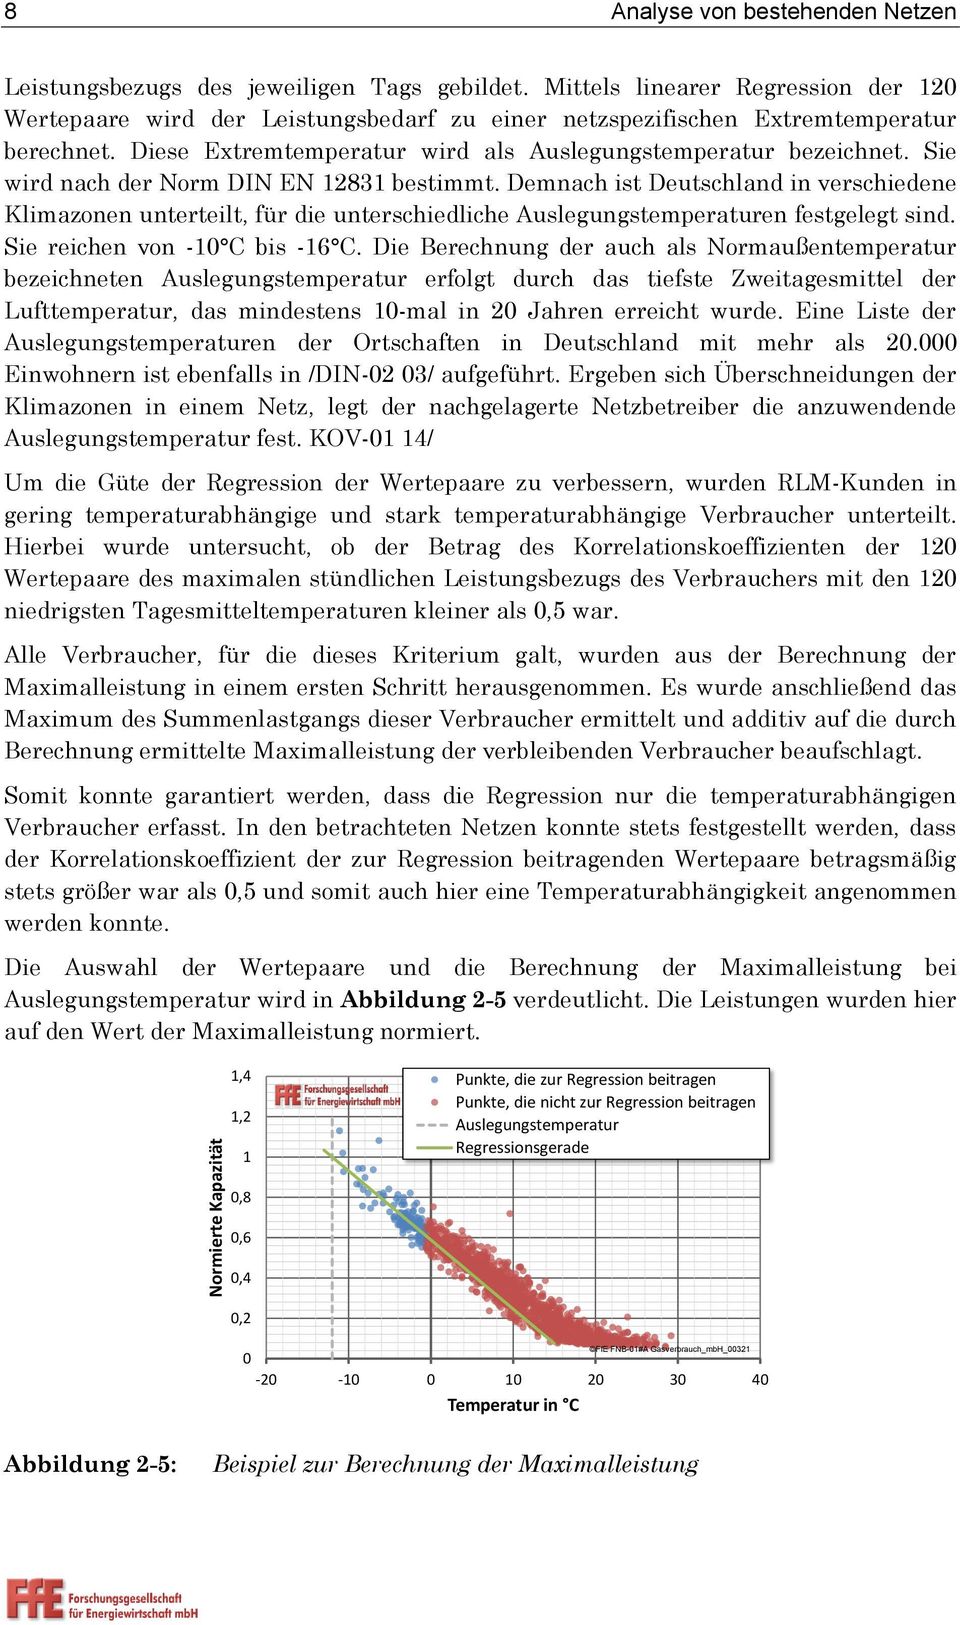 Sie wird nach der Norm DIN EN 12831 bestimmt. Demnach ist Deutschland in verschiedene Klimazonen unterteilt, für die unterschiedliche Auslegungstemperaturen festgelegt sind.